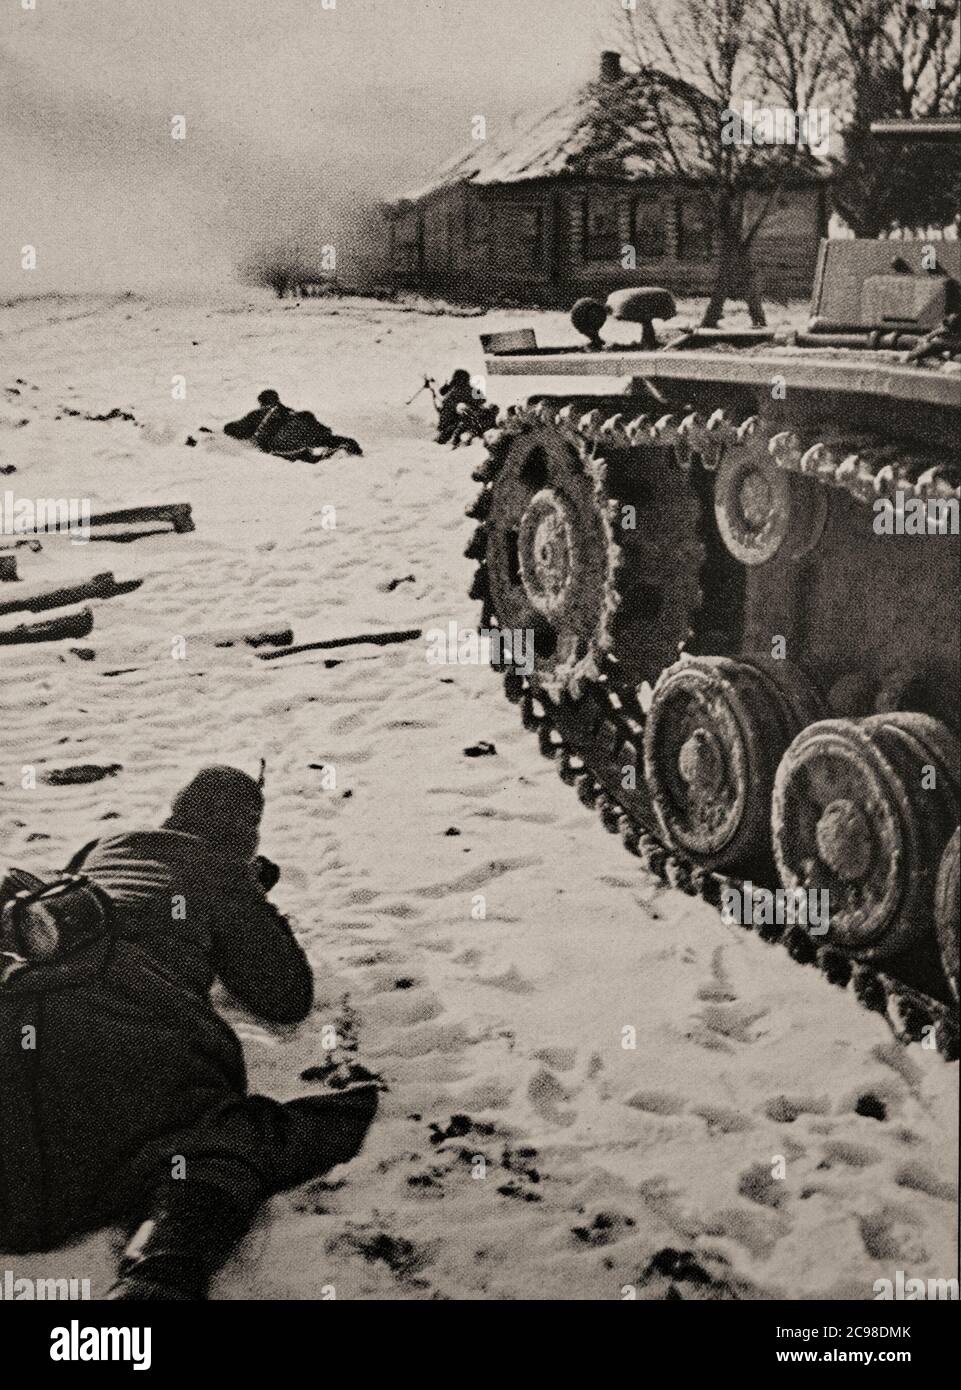 Deutsche Soldaten während der Schlacht von Stalingrad (23. August 1942 – 2. Februar 1943), als Deutschland und seine Verbündeten die Sowjetunion um die Kontrolle über die Stadt Stalingrad (heute Wolgograd) in Südrussland kämpften. Geprägt von heftigen Nahkampfkämpfen und direkten Angriffen auf Zivilisten bei Luftangriffen, war es eine der blutigsten Schlachten in der Geschichte der Kriegsführung mit schätzungsweise 2 Millionen Toten. Stockfoto